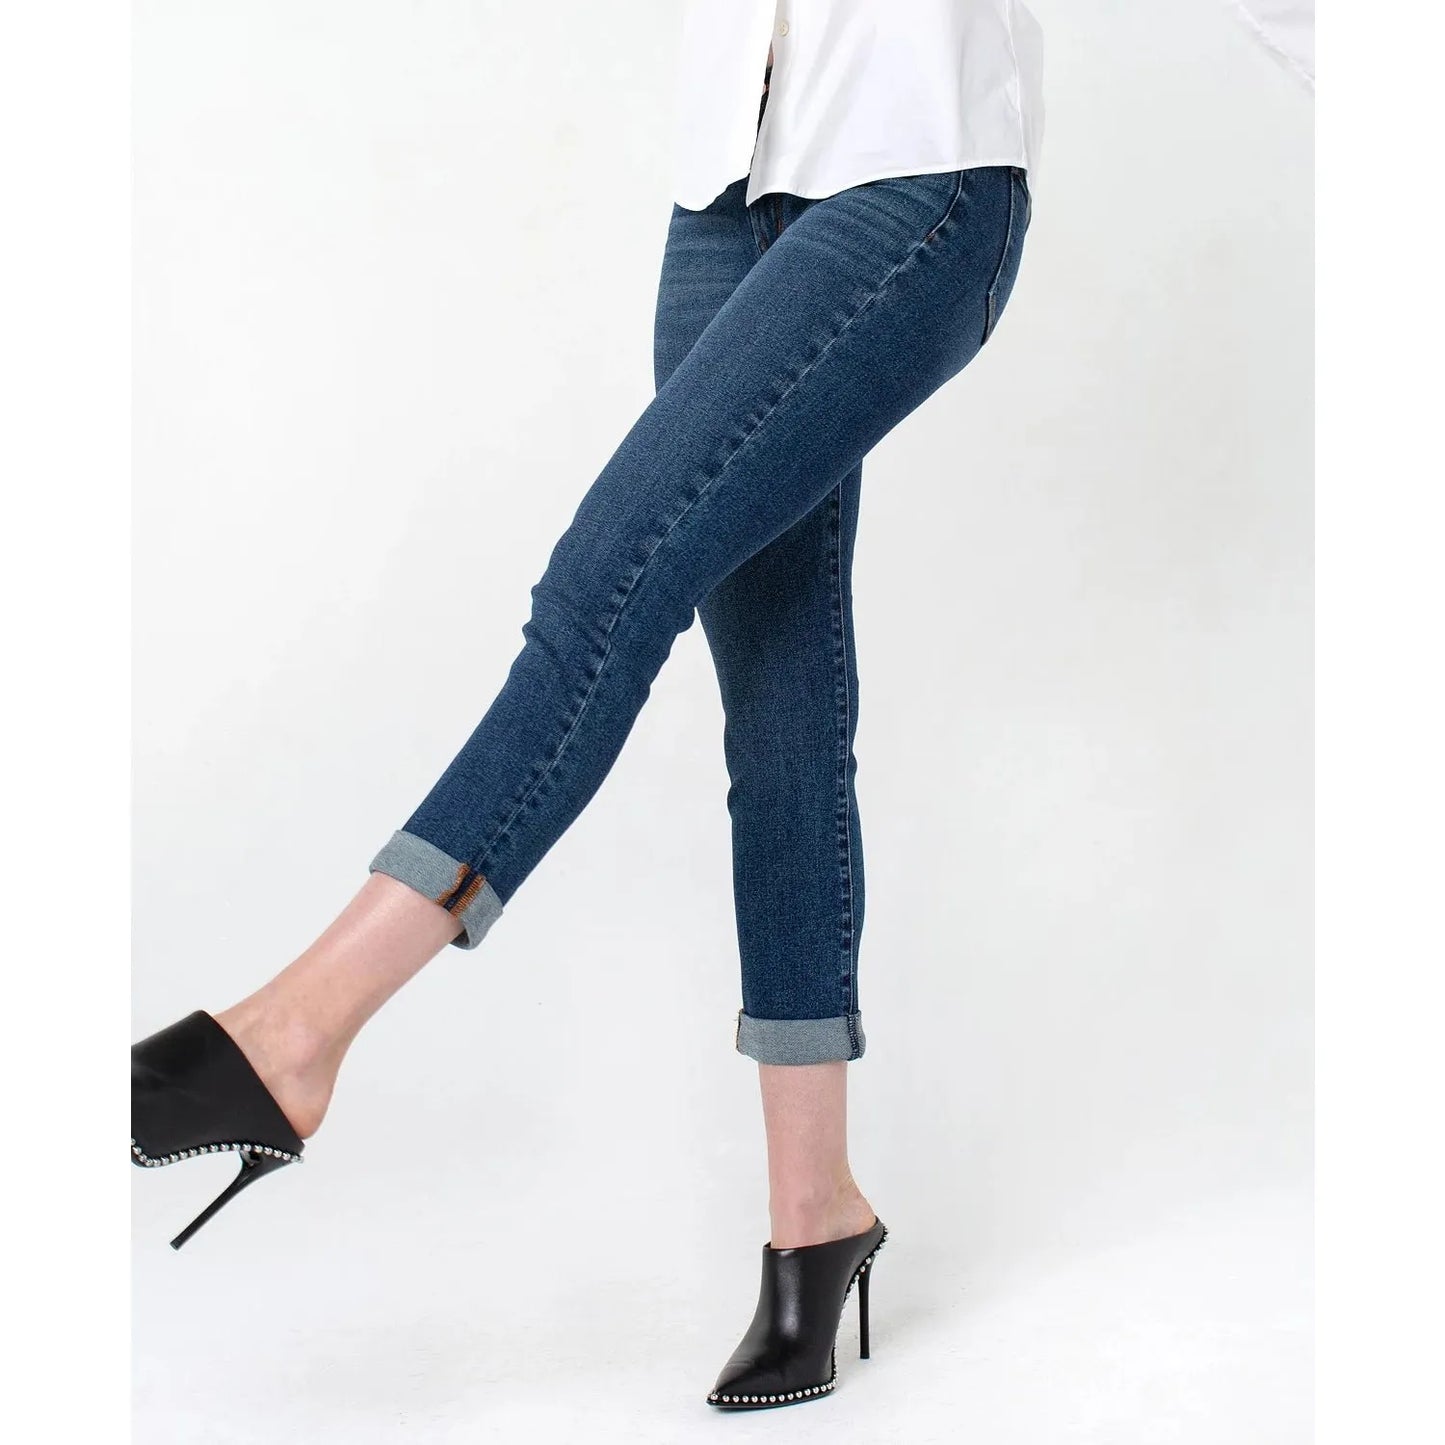 RACHEL-RACHEL Womens Roll Cuff Girlfriend Jeans, Blue, Size: 4 - Brandat Outlet